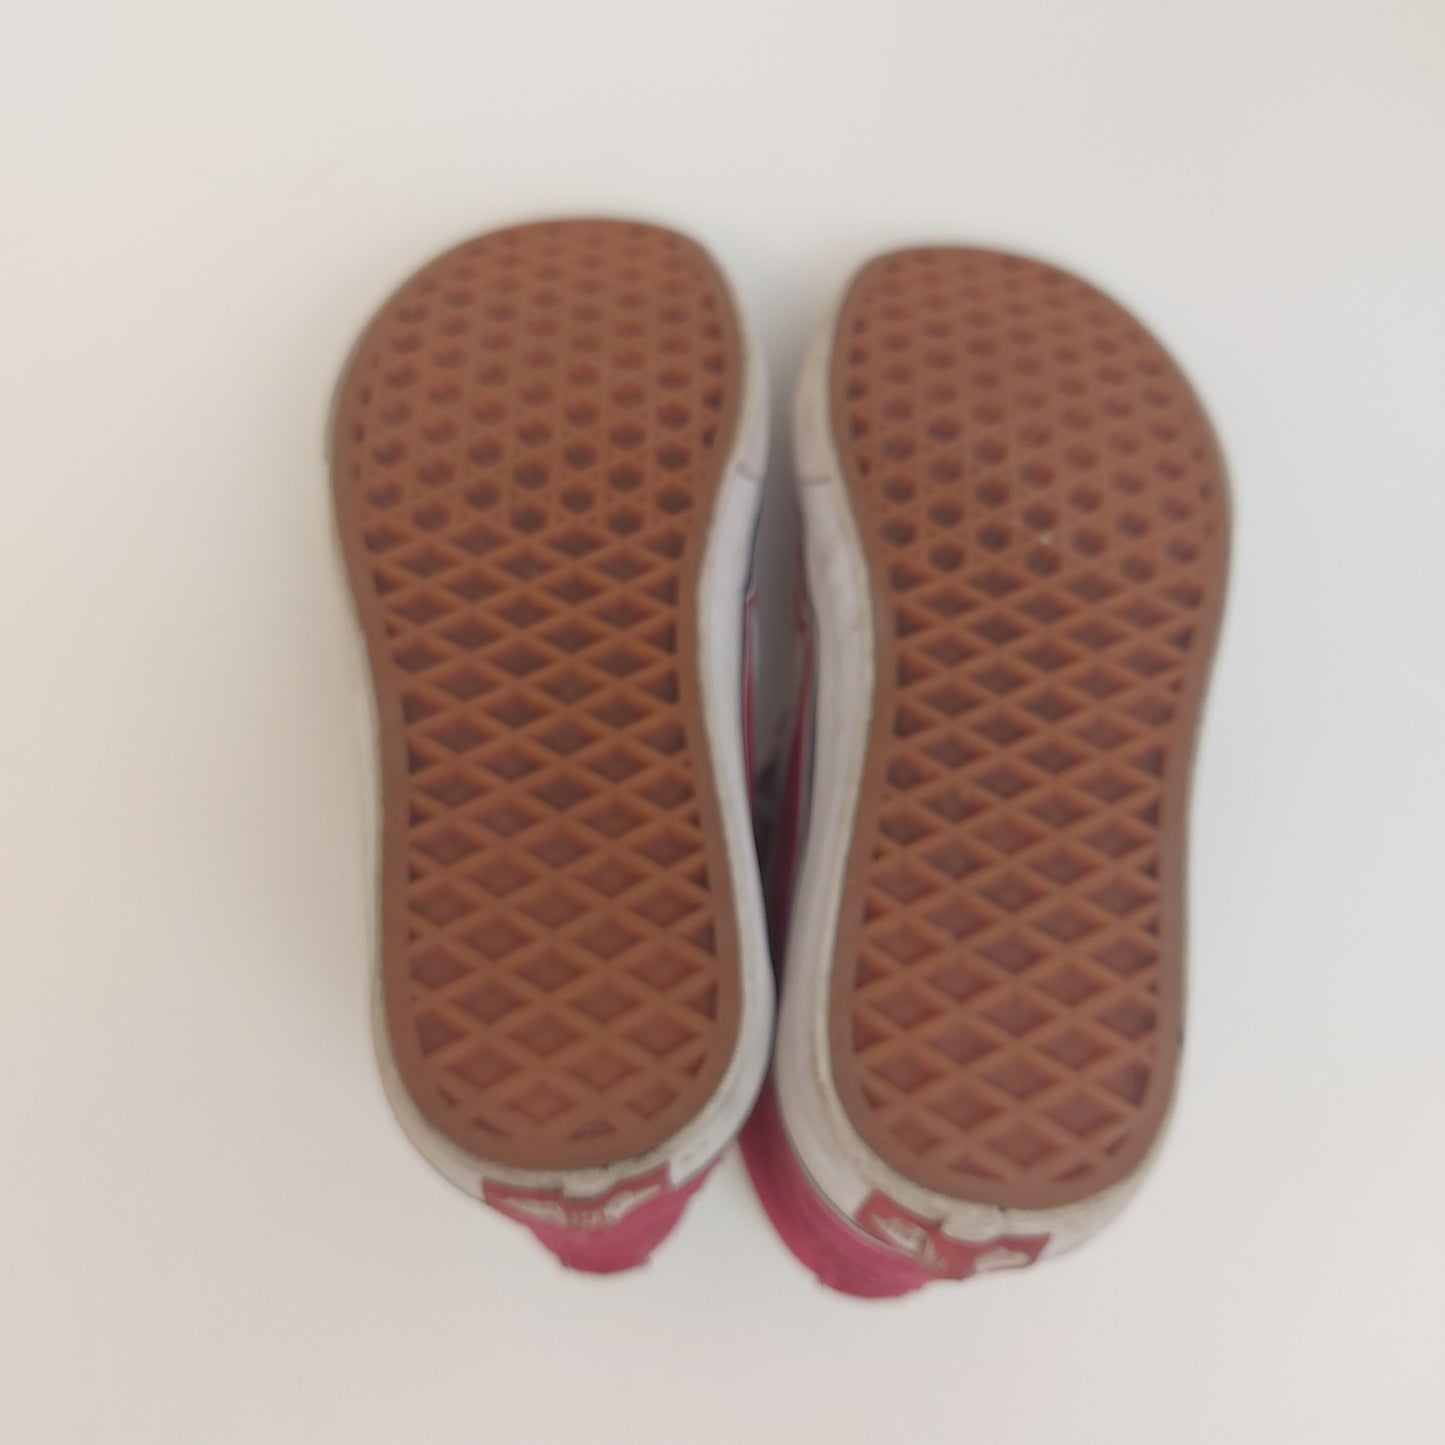 Hot Pink Fuchsia VANS Leather Skateboard Shoe Hi-Top, Men 3.5, Women 5 751505